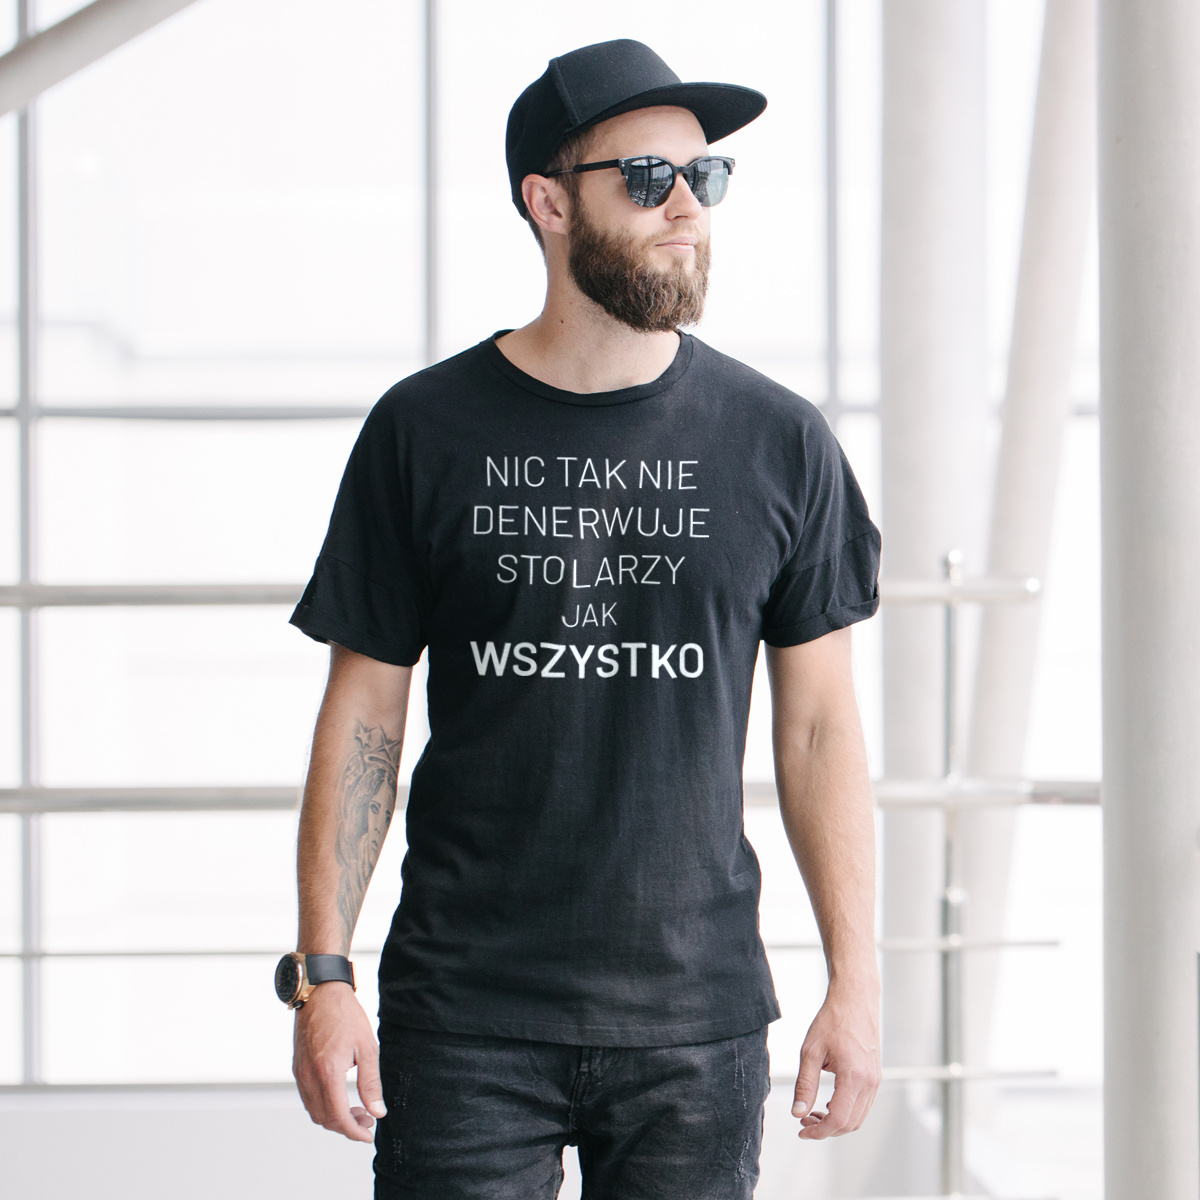 Nic Tak Nie Denerwuje Stolarzy Jak Wszystko - Męska Koszulka Czarna